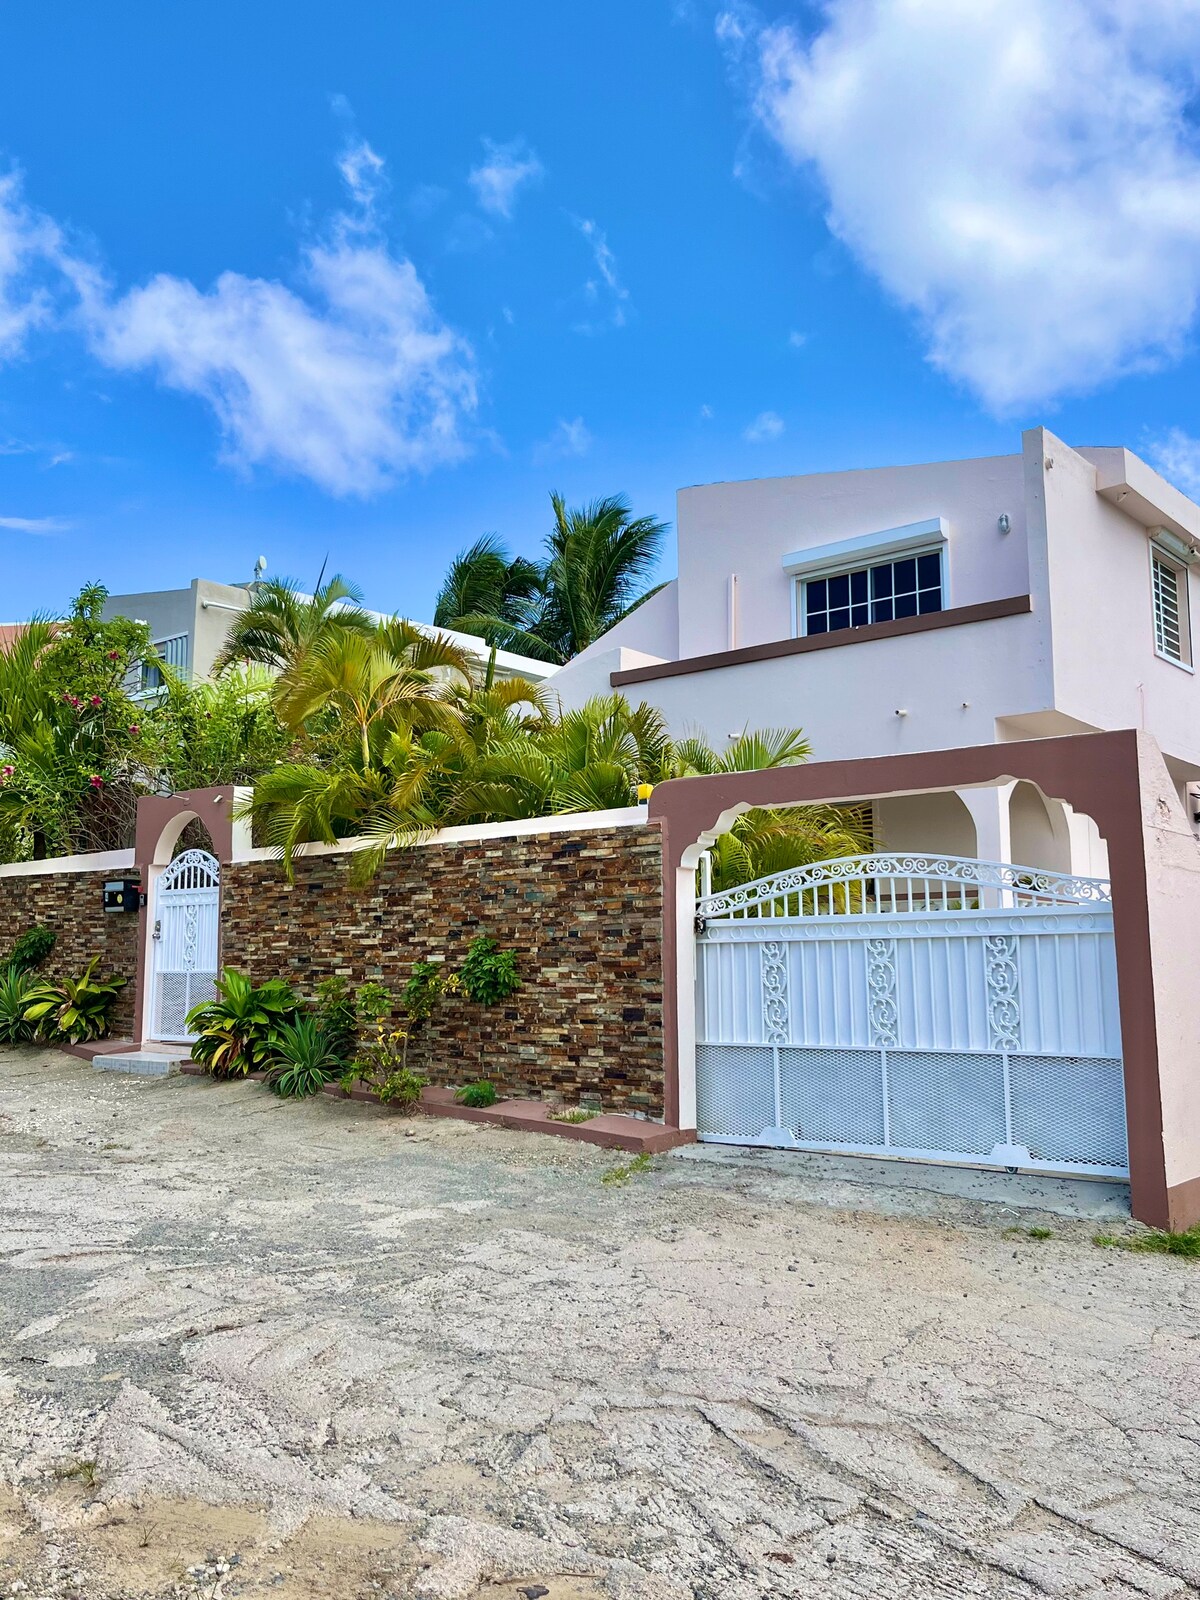 加勒比风格的家庭住宅